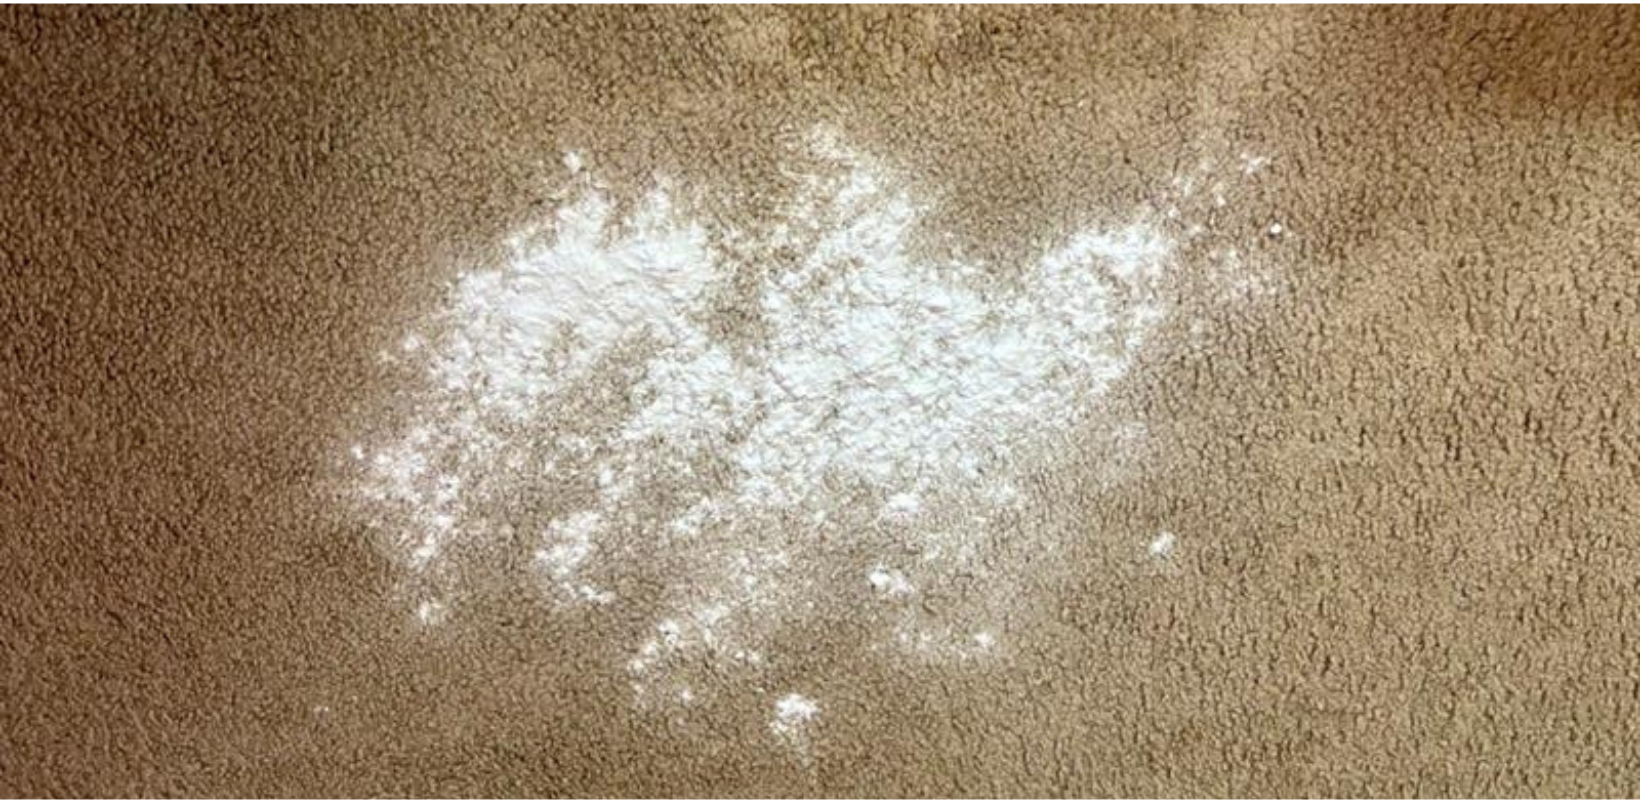 Use baking soda to kill mold on carpet